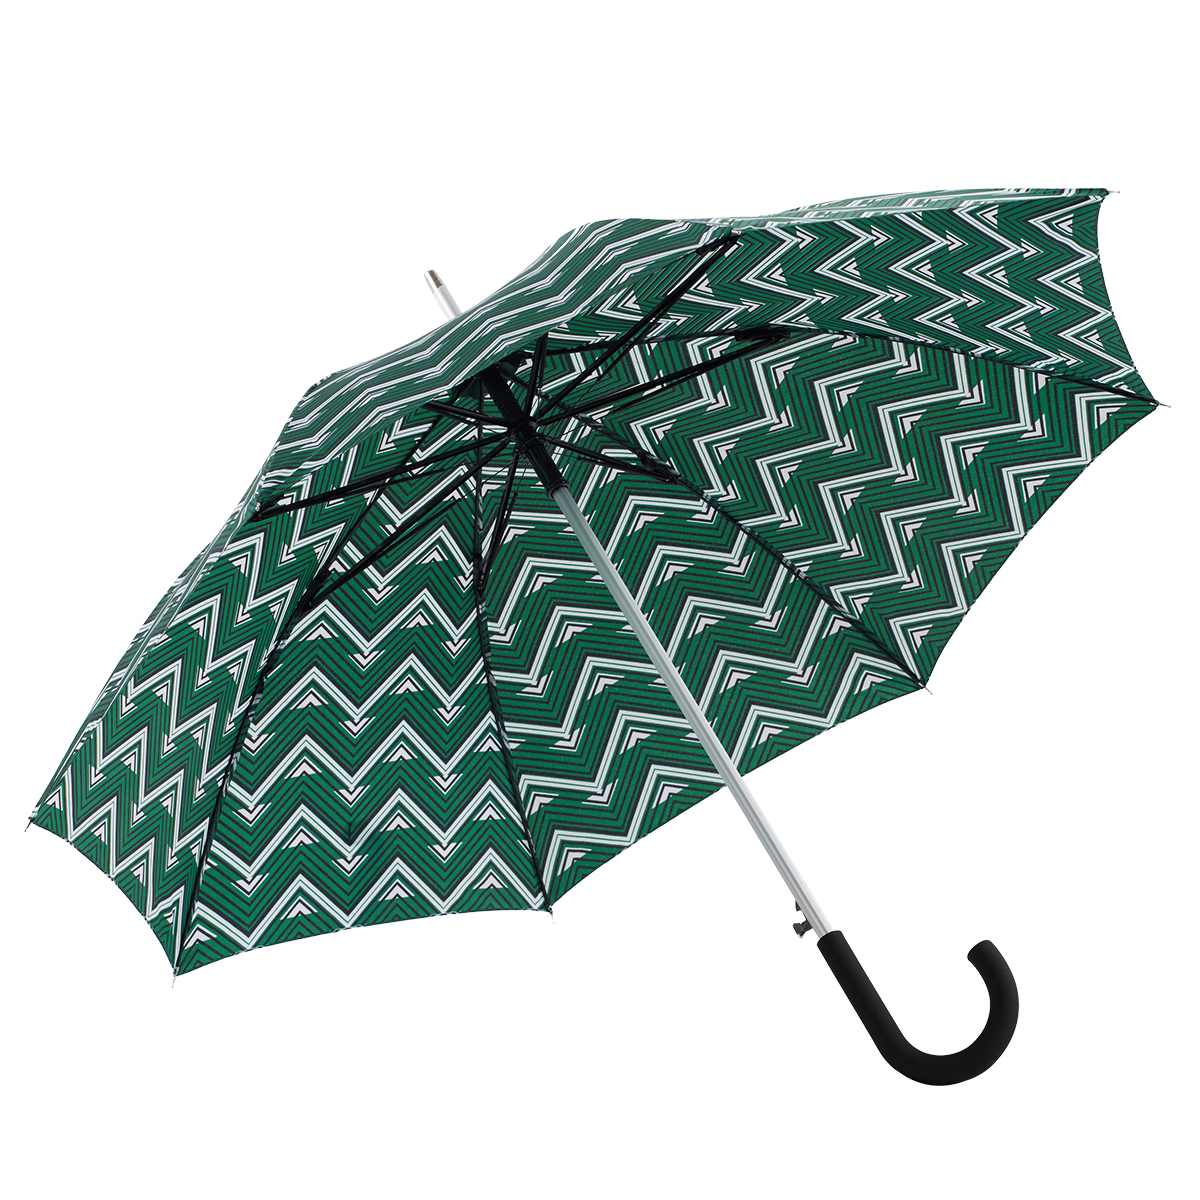 8 Makahiki Exporter 3 Folding Reverse Umbrella - Ovida lāʻau lōʻihi alumini pale makani hoʻolaha hoʻohalahala ʻakomi Alu kala metala pololei umbrella – DongFangZhanXin